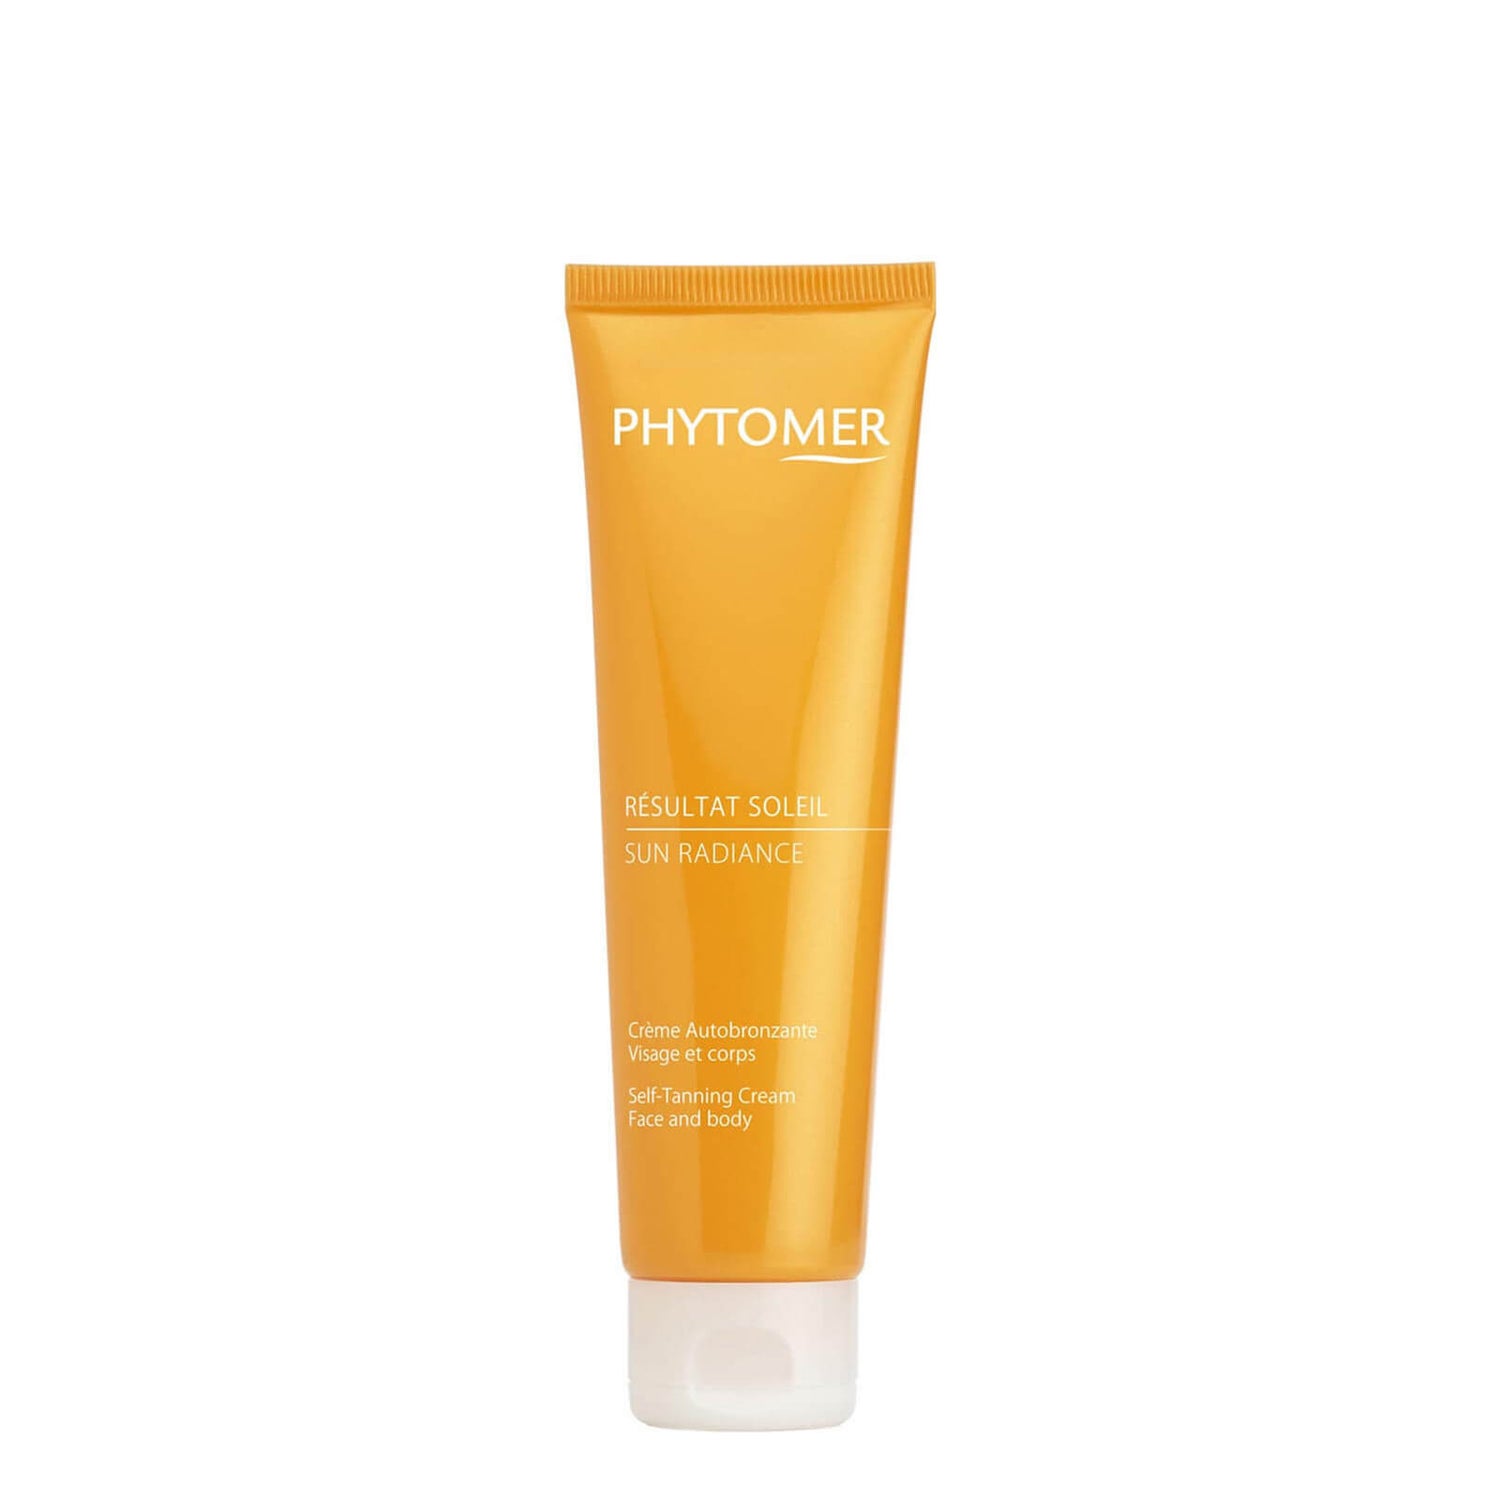  Crema Autobronceadora para Cara y Cuerpo Sun Radiance de Phytomer 125 ml